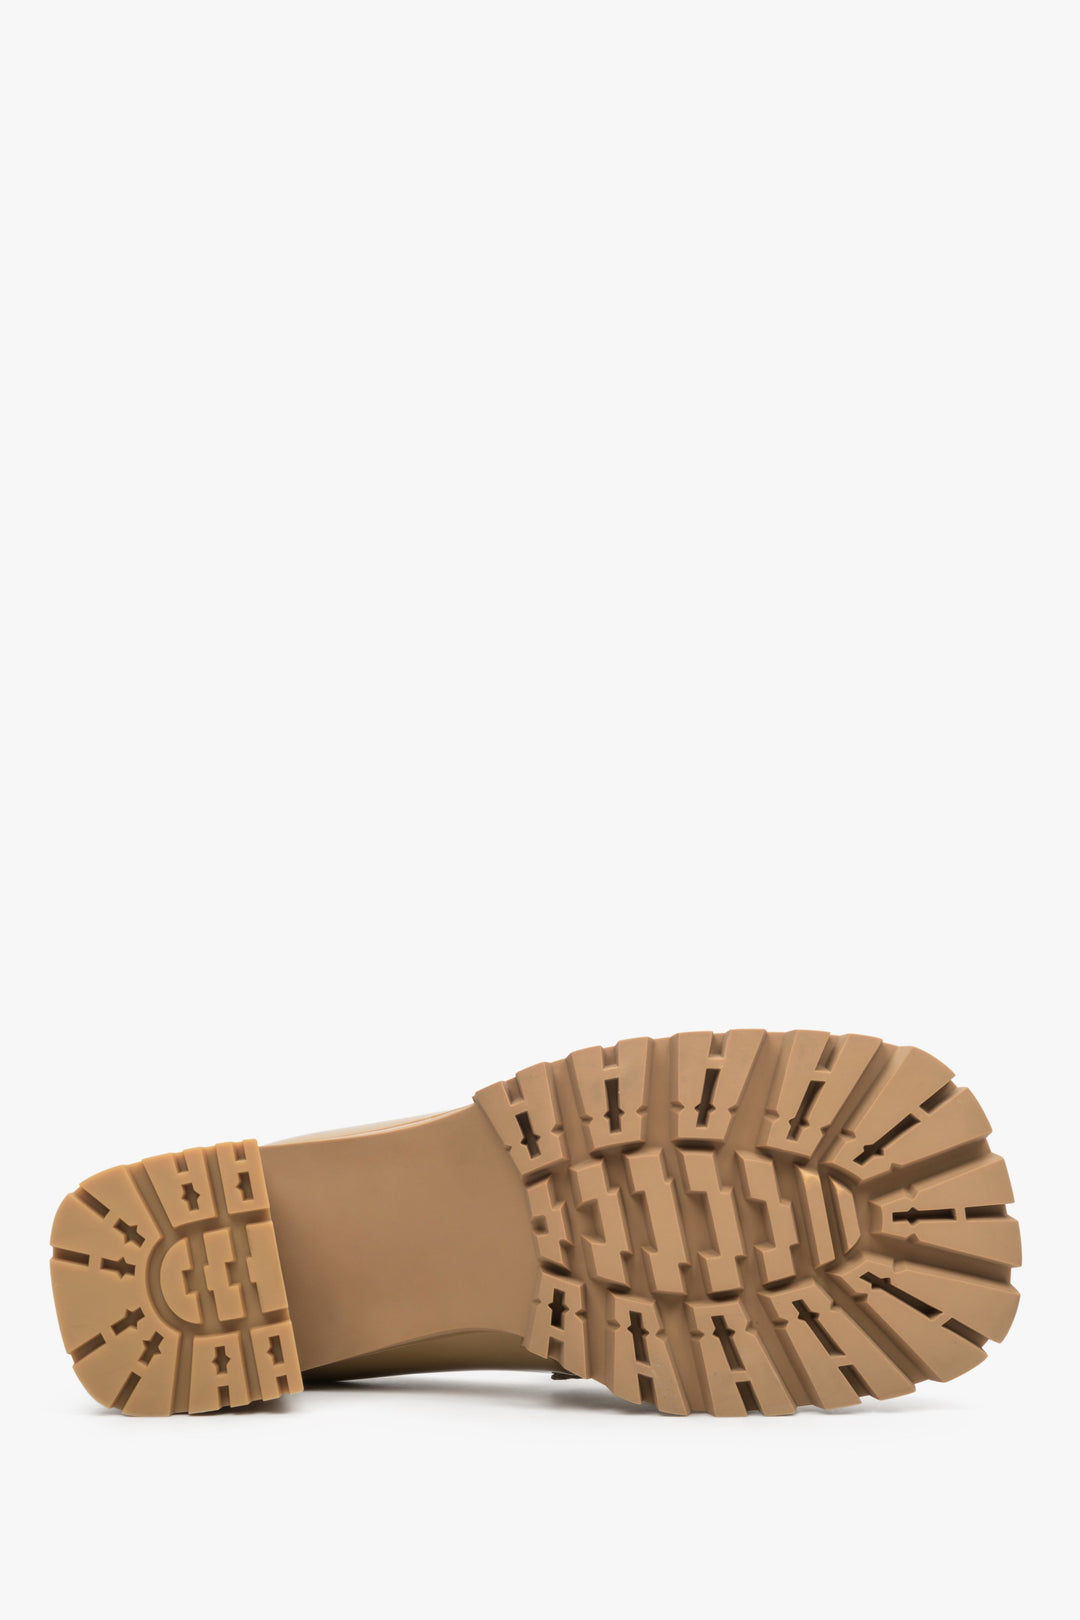 Skórzane mokasyny damskie w kolorze brązowym z lakierowanej skóry naturalnej Estro - zbliżenie na podeszwę buta.